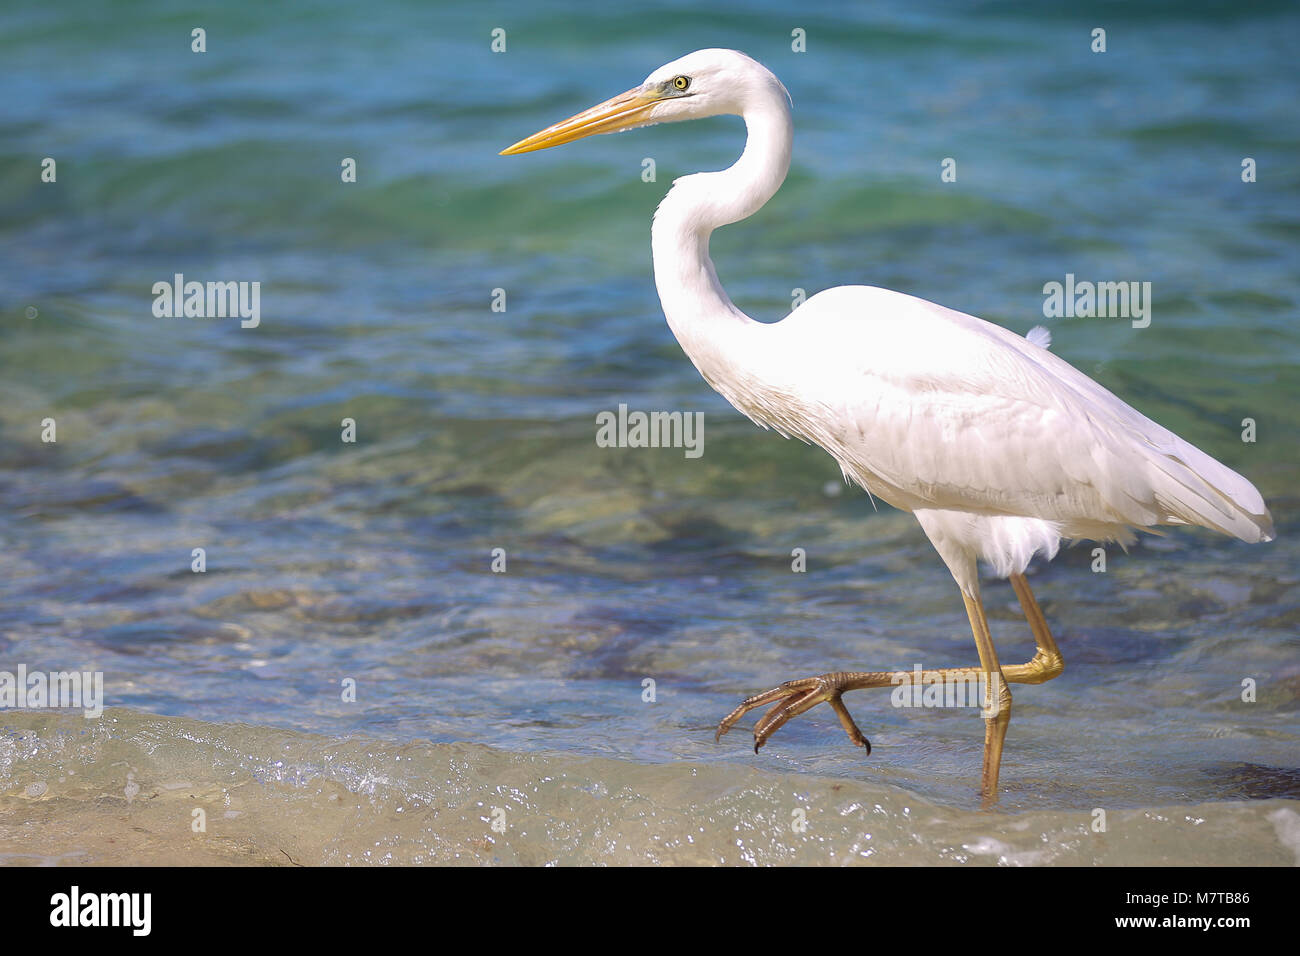 Weiße Reiher, Fischreiher, vogel Kran spielen die Jagd in der Brandung Sunset Key. Stockfoto